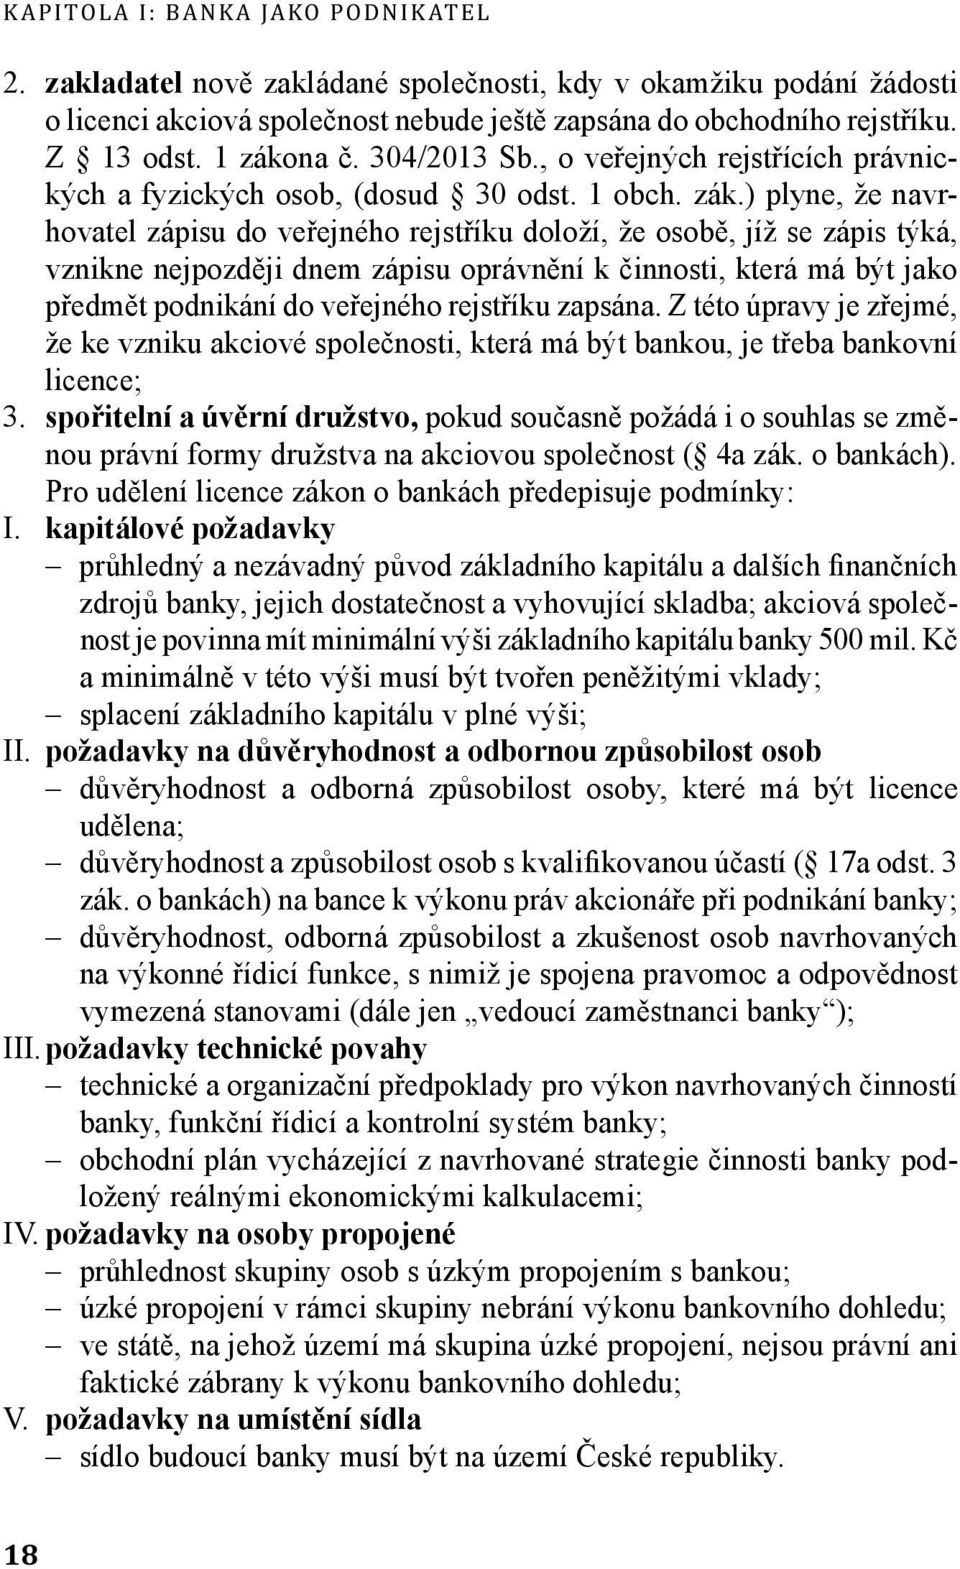 na č. 304/2013 Sb., o veřejných rejstřících právnických a fyzických osob, (dosud 30 odst. 1 obch. zák.